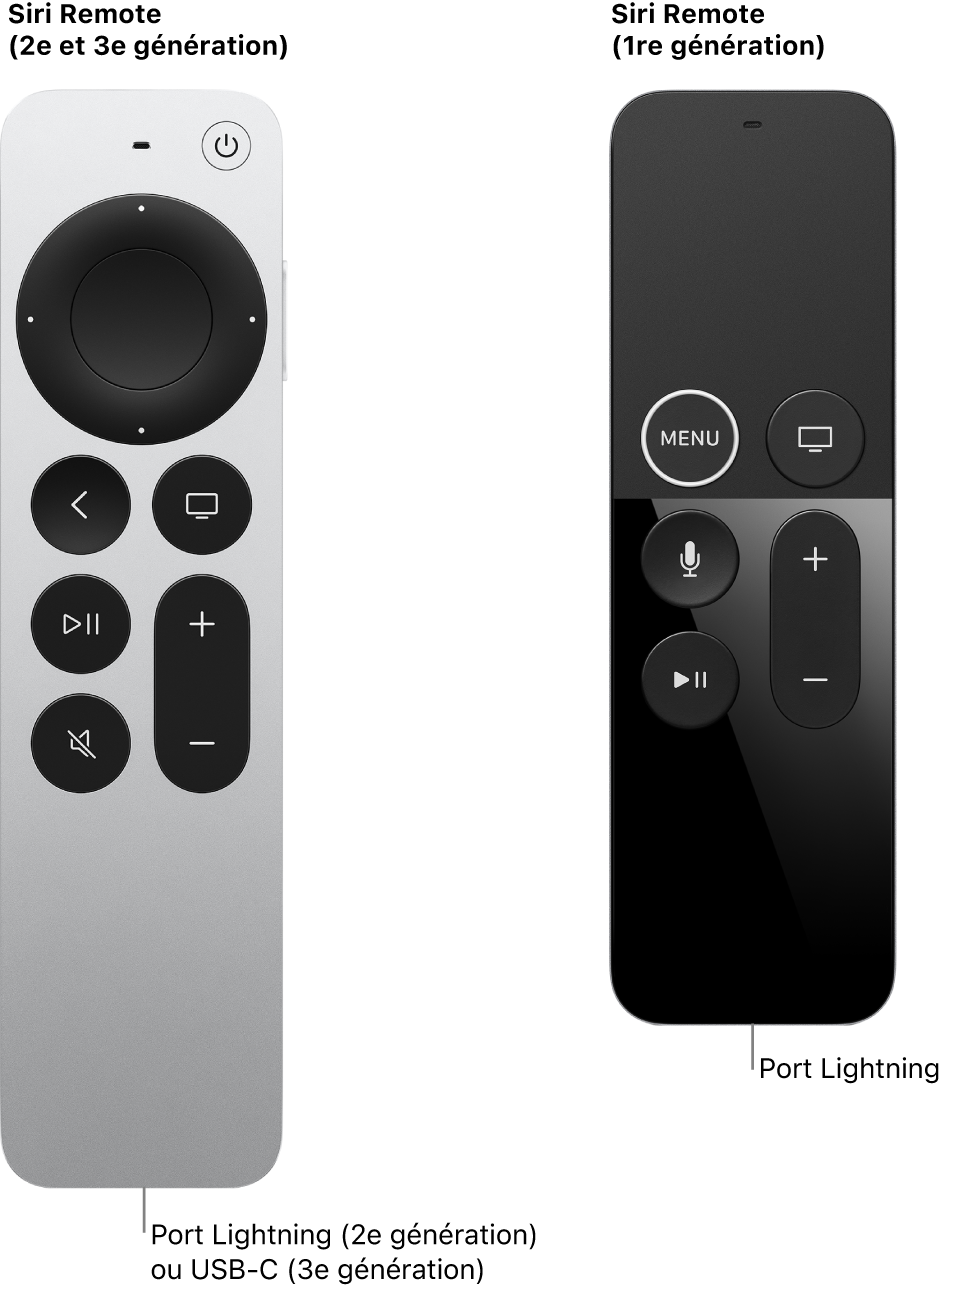 Image des télécommandes Siri Remote (2e et 3e générations) et Siri Remote (1re génération) qui montre le port Lightning